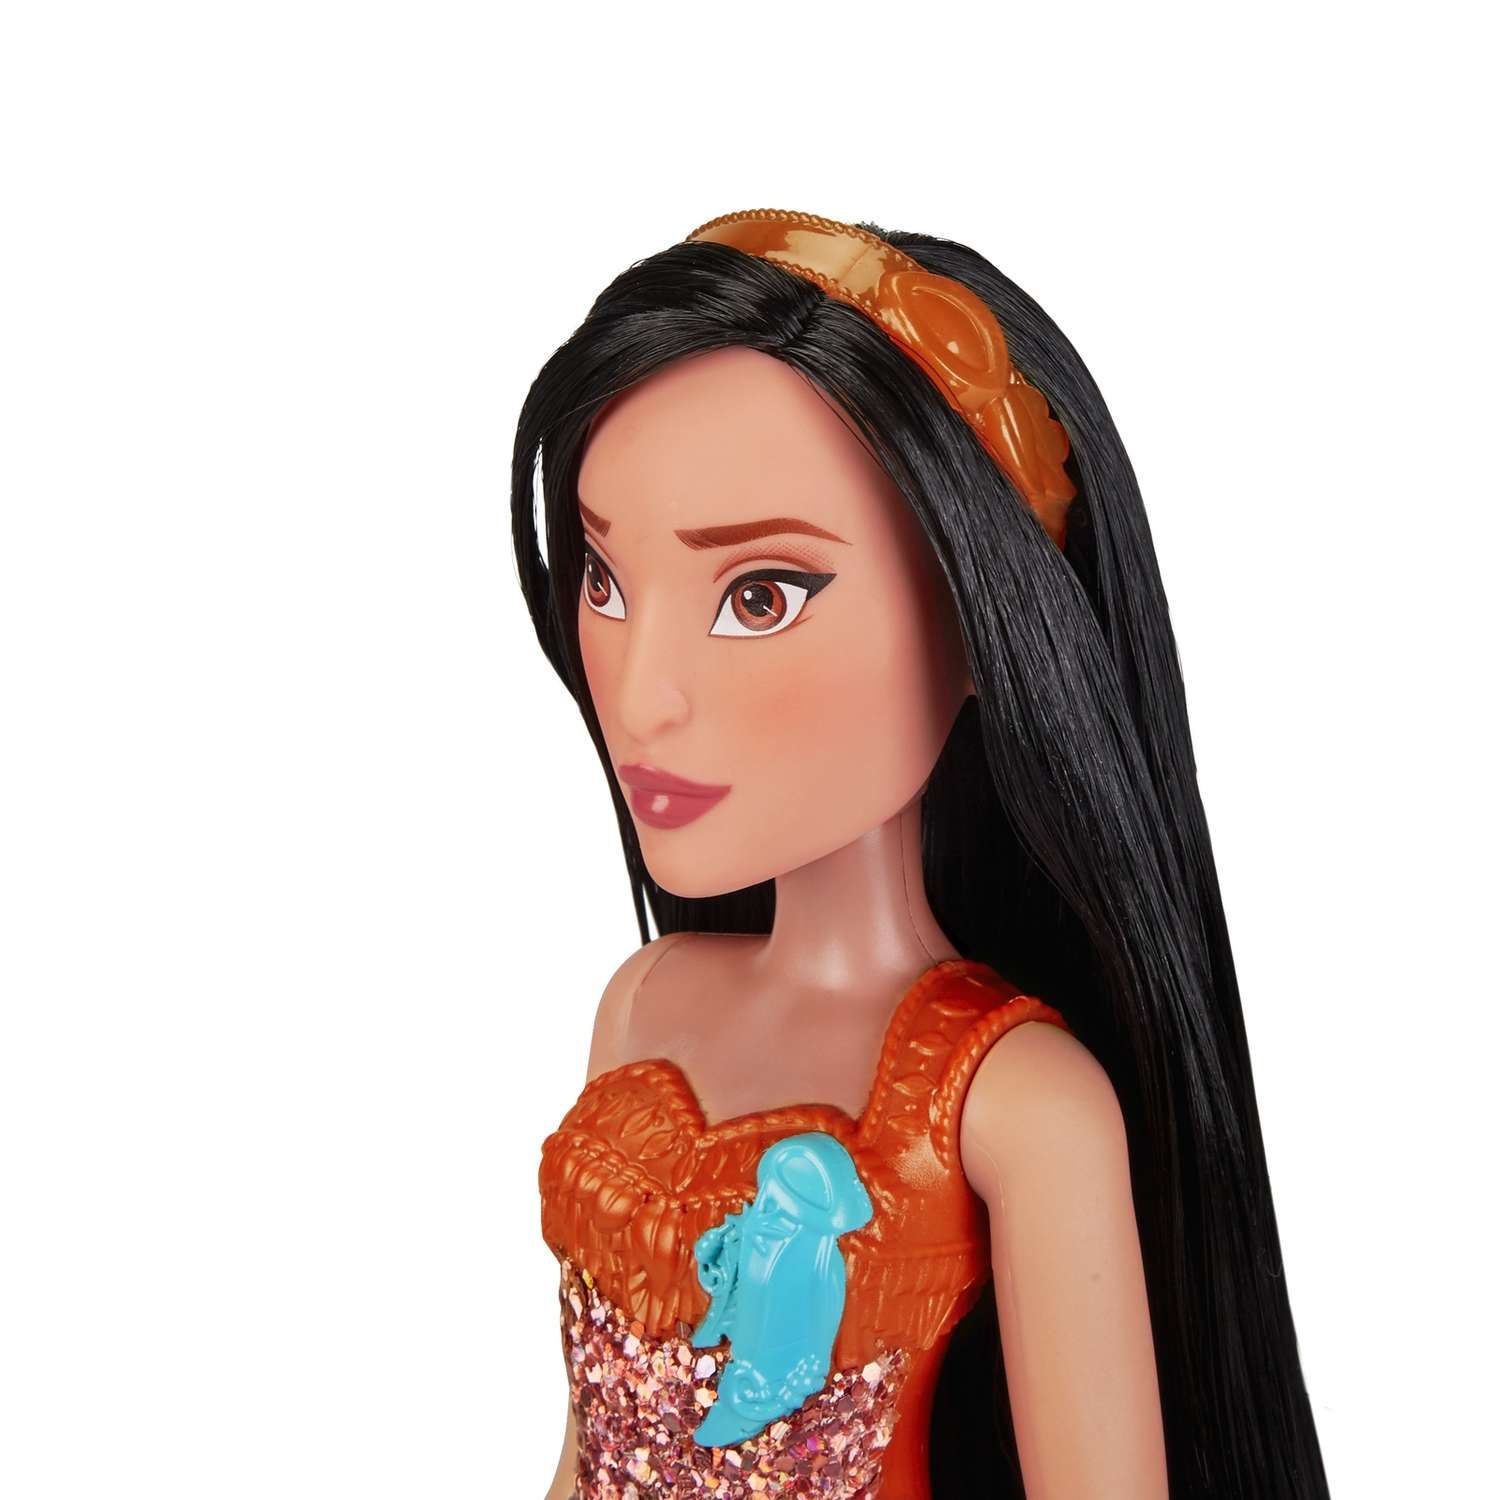 Кукла Disney Princess Hasbro C Покахонтас E4165EU4 E4022EU4 - фото 11